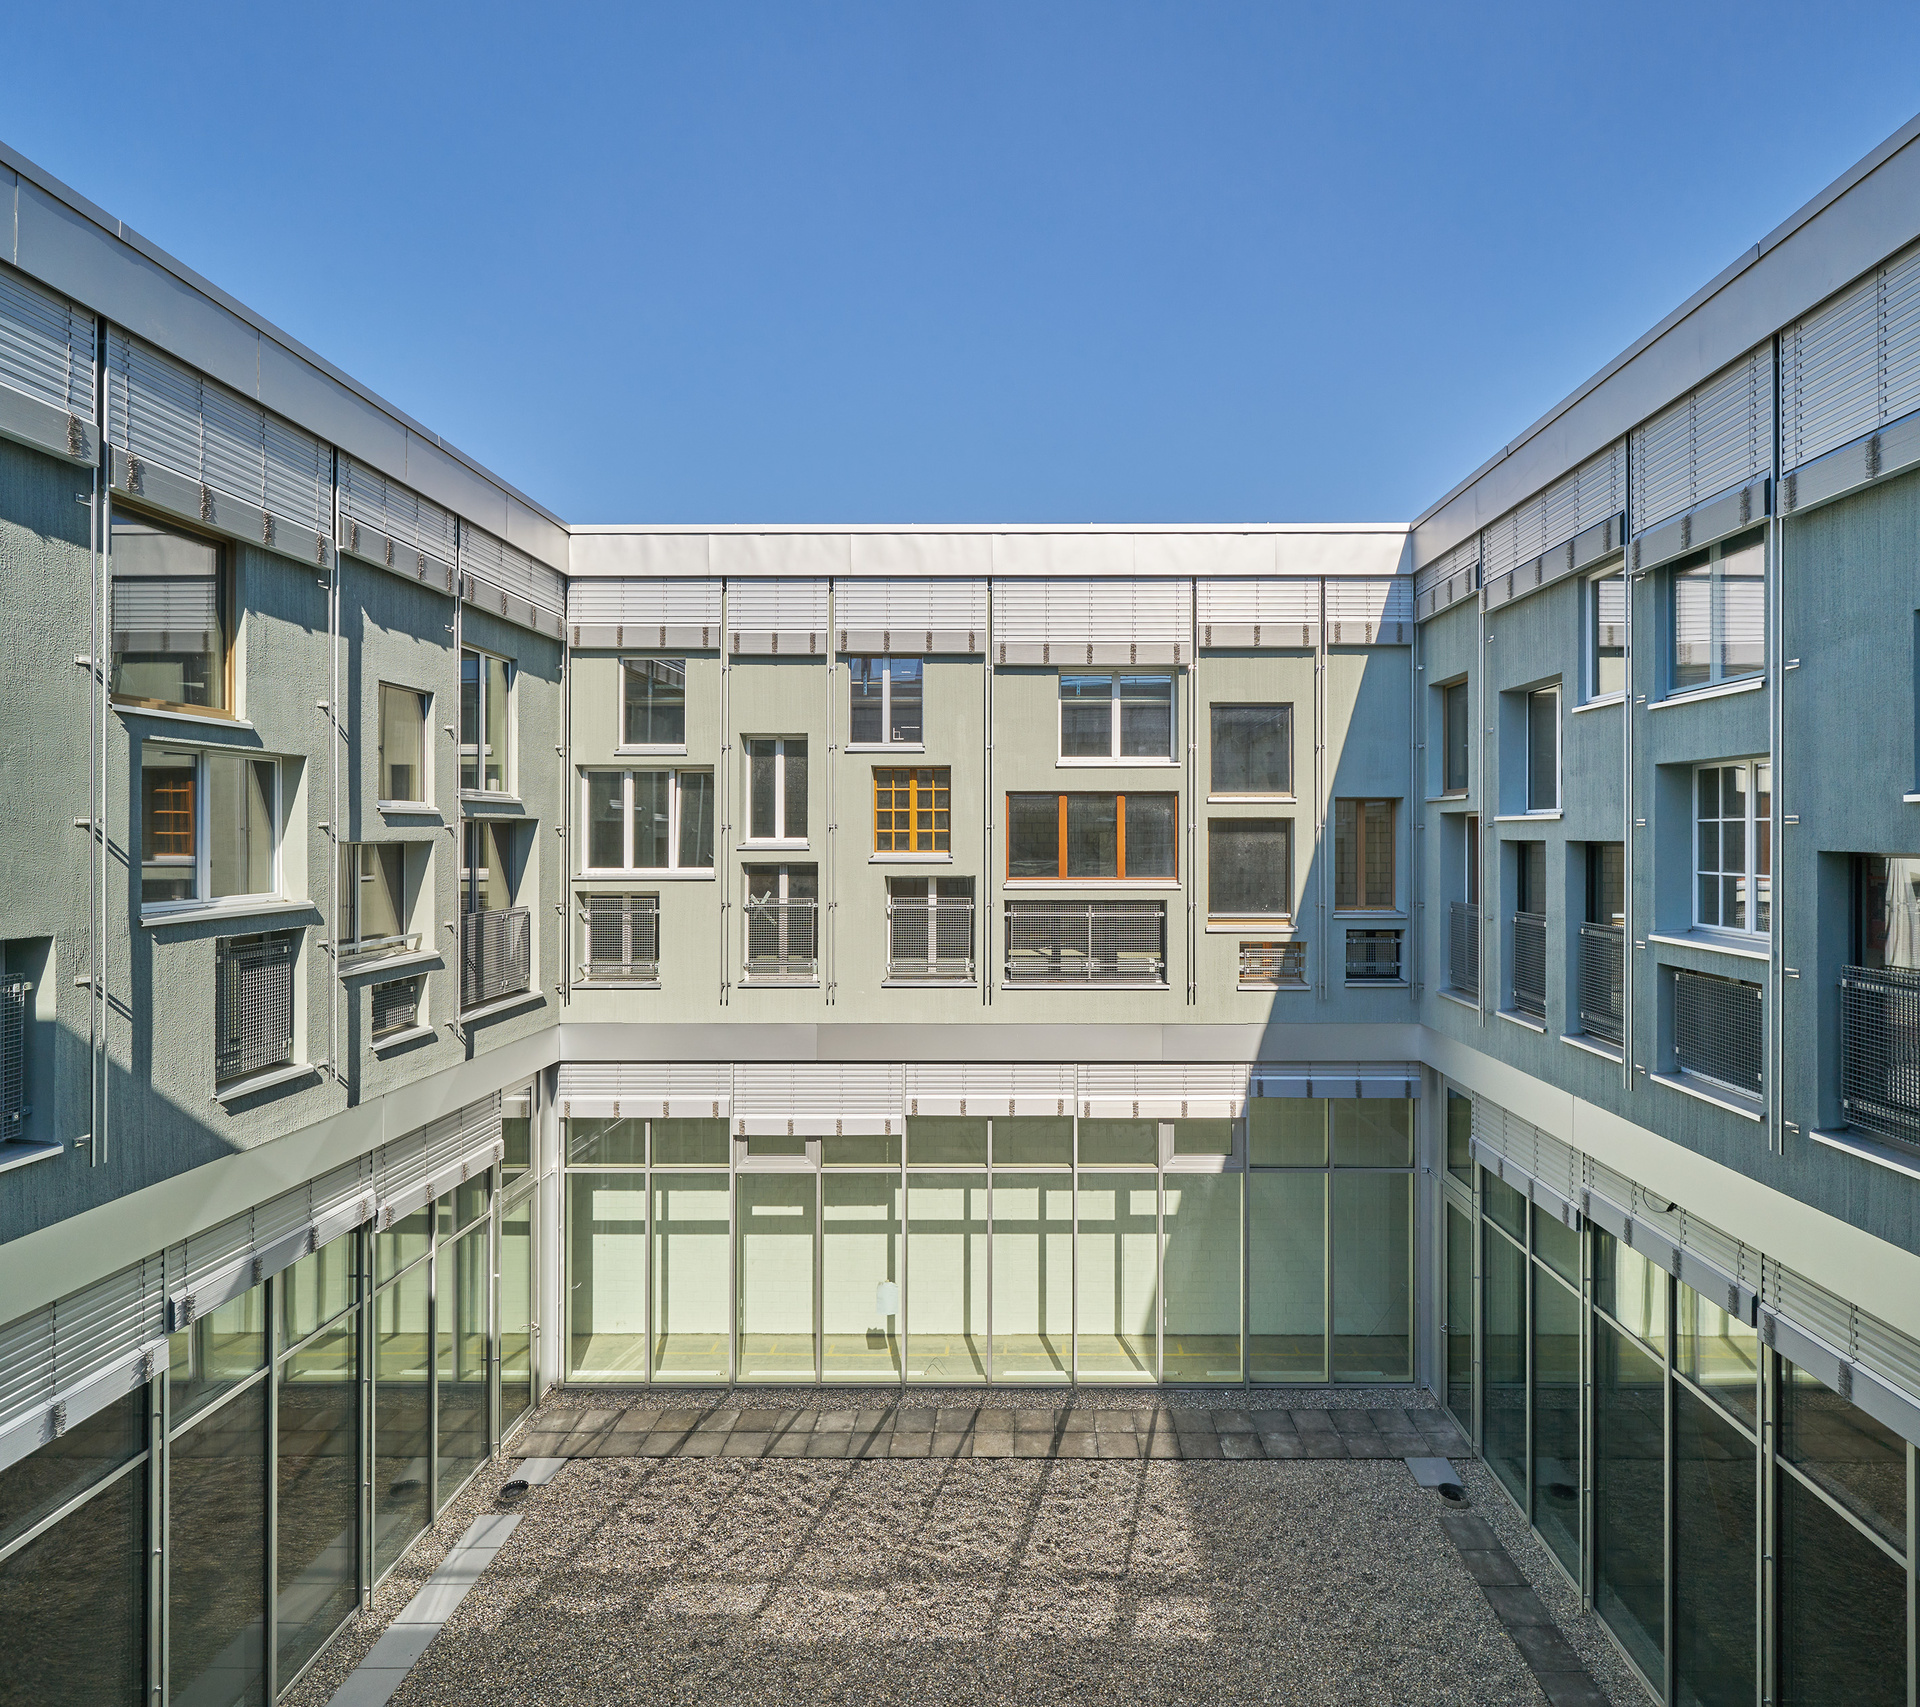 Gewerbe- und Bürohaus Elys in Basel, Architektur Baubüro in situ © ZDF und SRF/Martin Zeller/Baubüro in situ